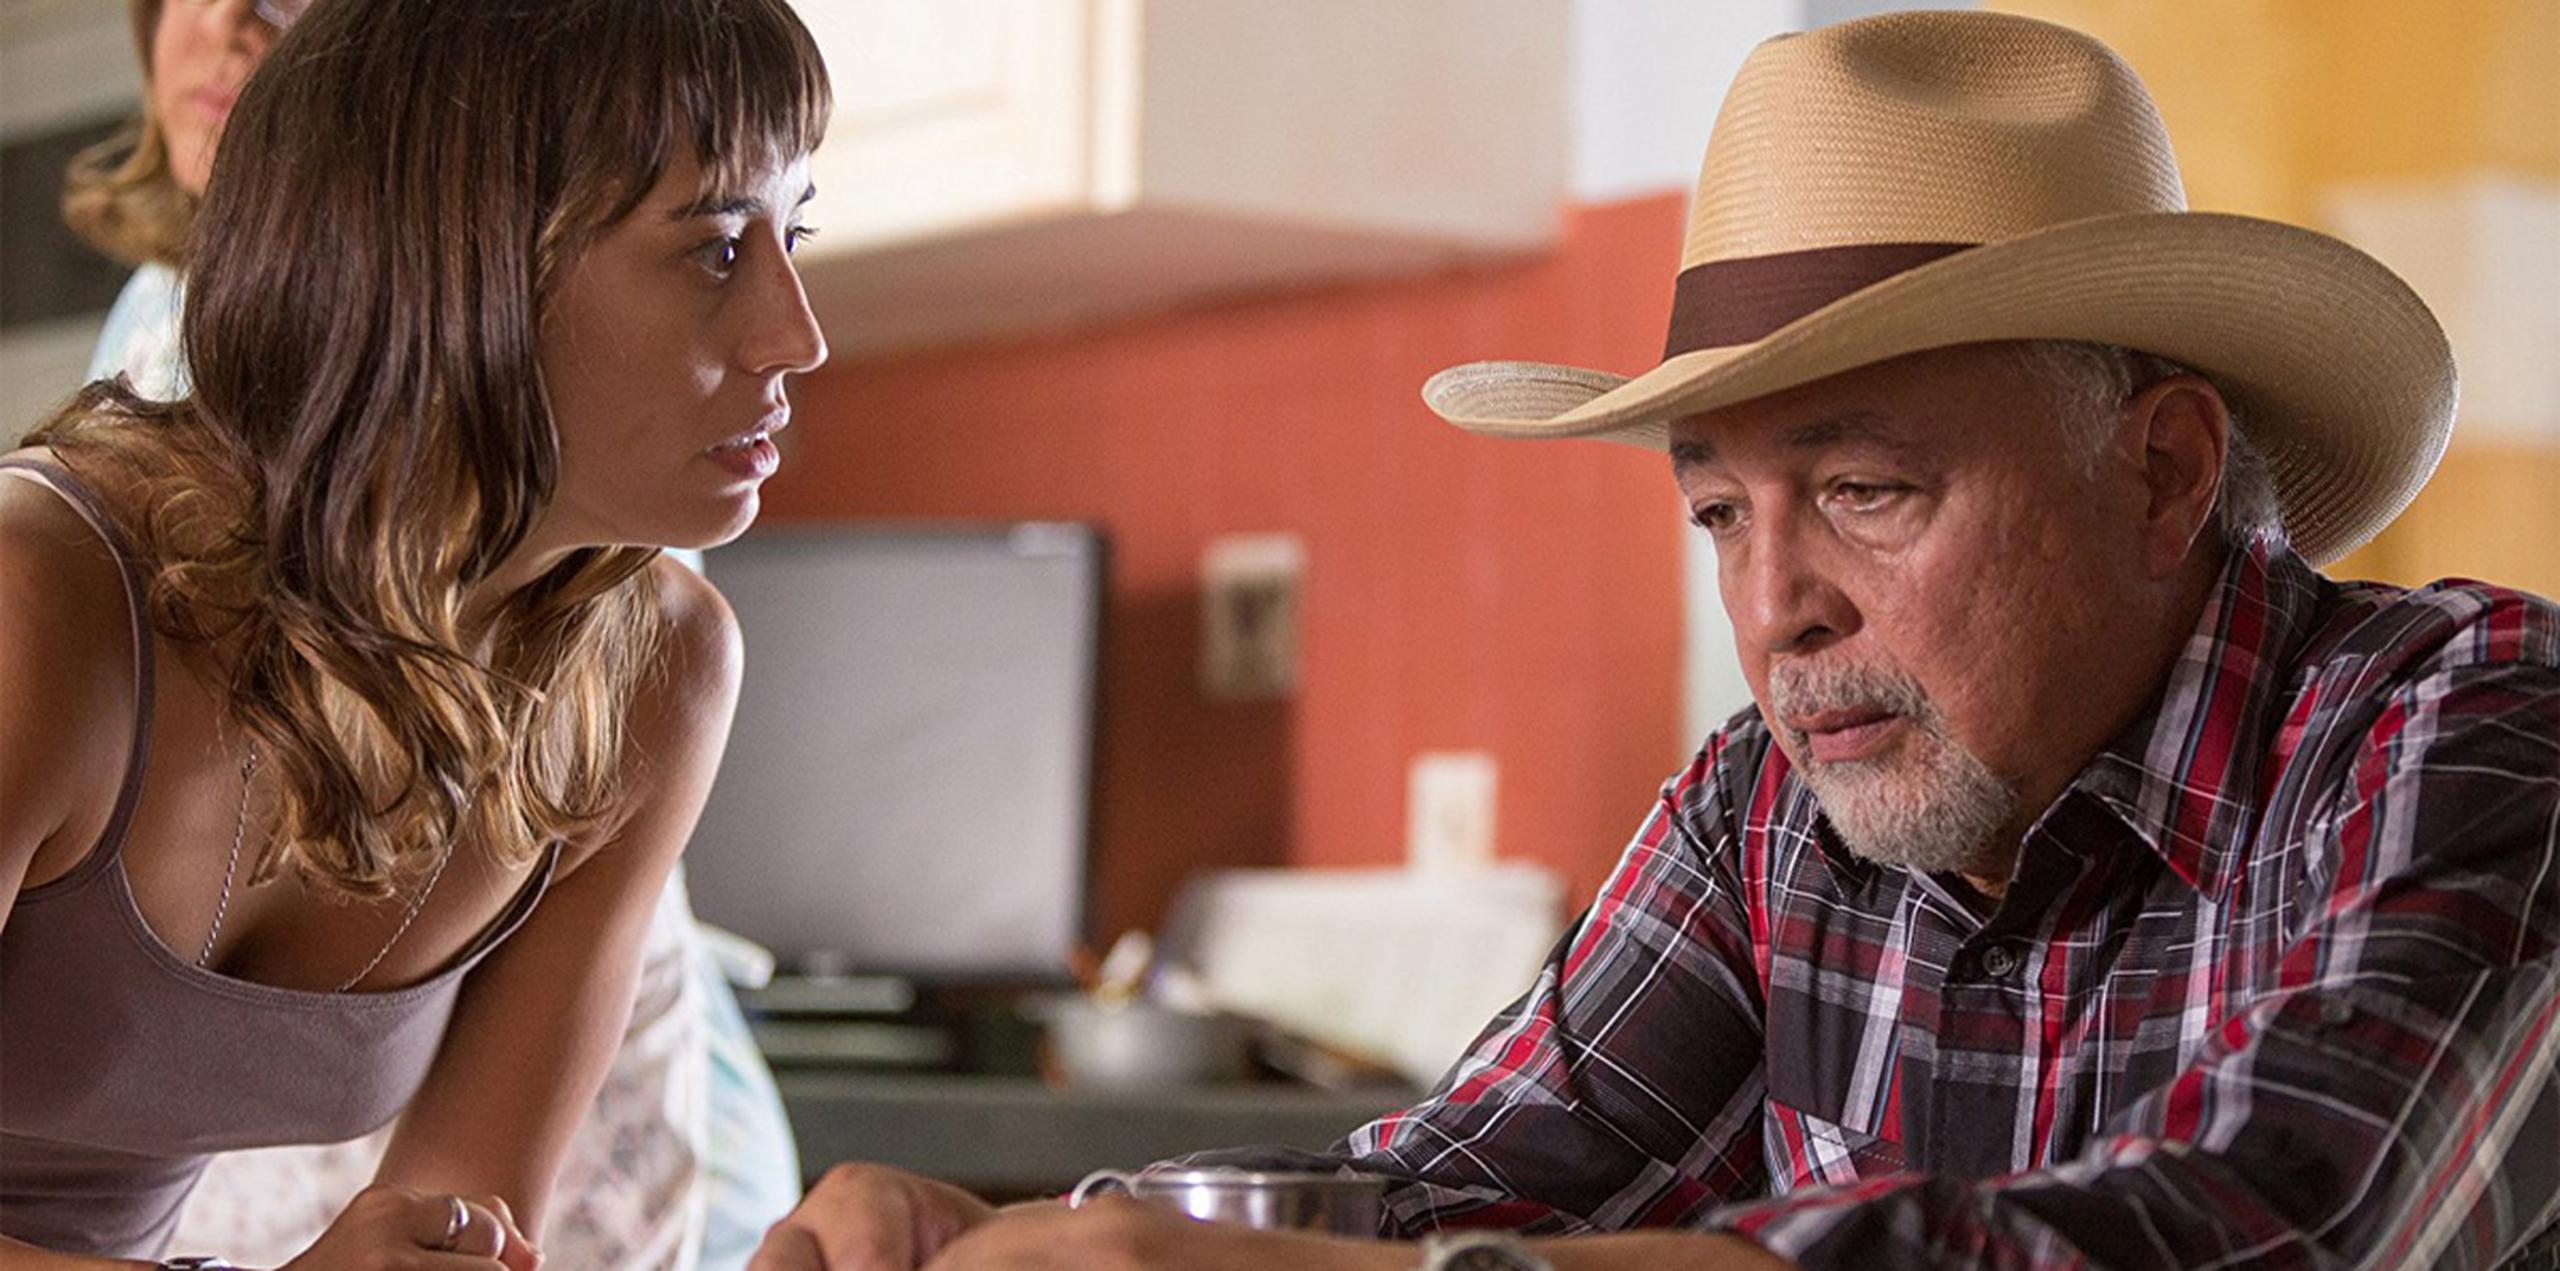 Marisé Álvarez y Sunshine Logroño interpreta a hija y padre en la película "Extra Terrestres".